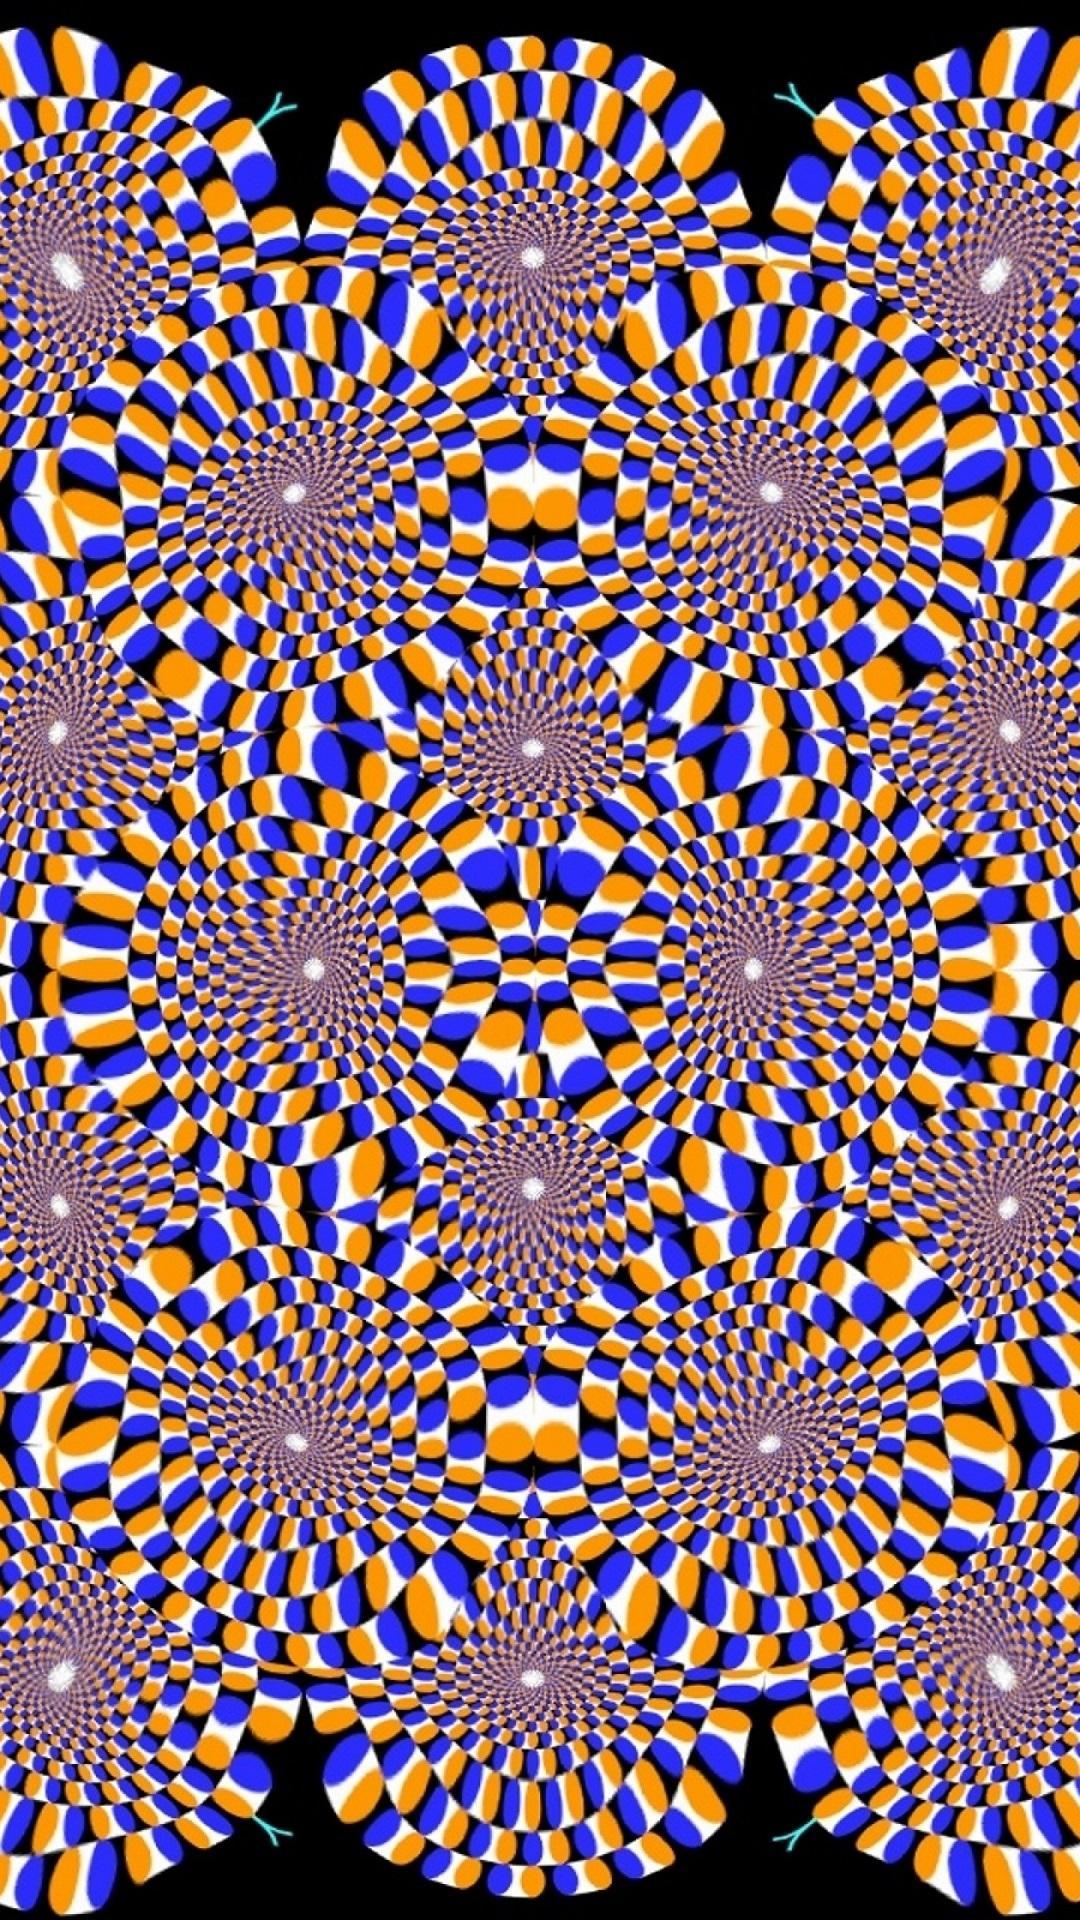 Движущиеся картинки для глаз. Оптические иллюзии галлюцинации. Живая иллюзия. Движущая картина. Иллюзии для глаз.